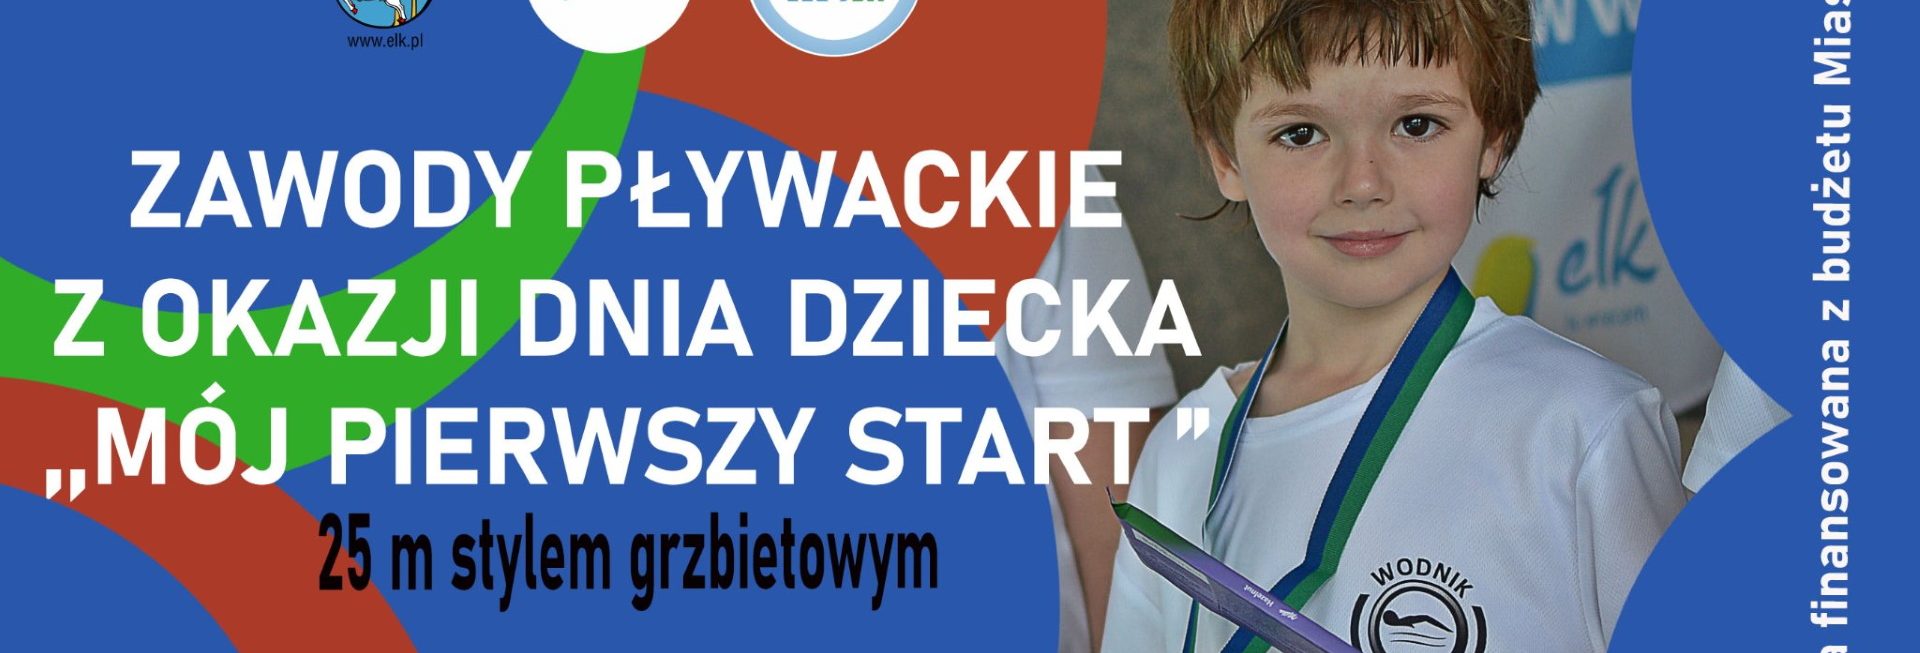 Plakat graficzny zapraszający do Ełku na zawody pływackie z okazji Dnia Dziecka ,,Mój pierwszy start” Ełk 2022.